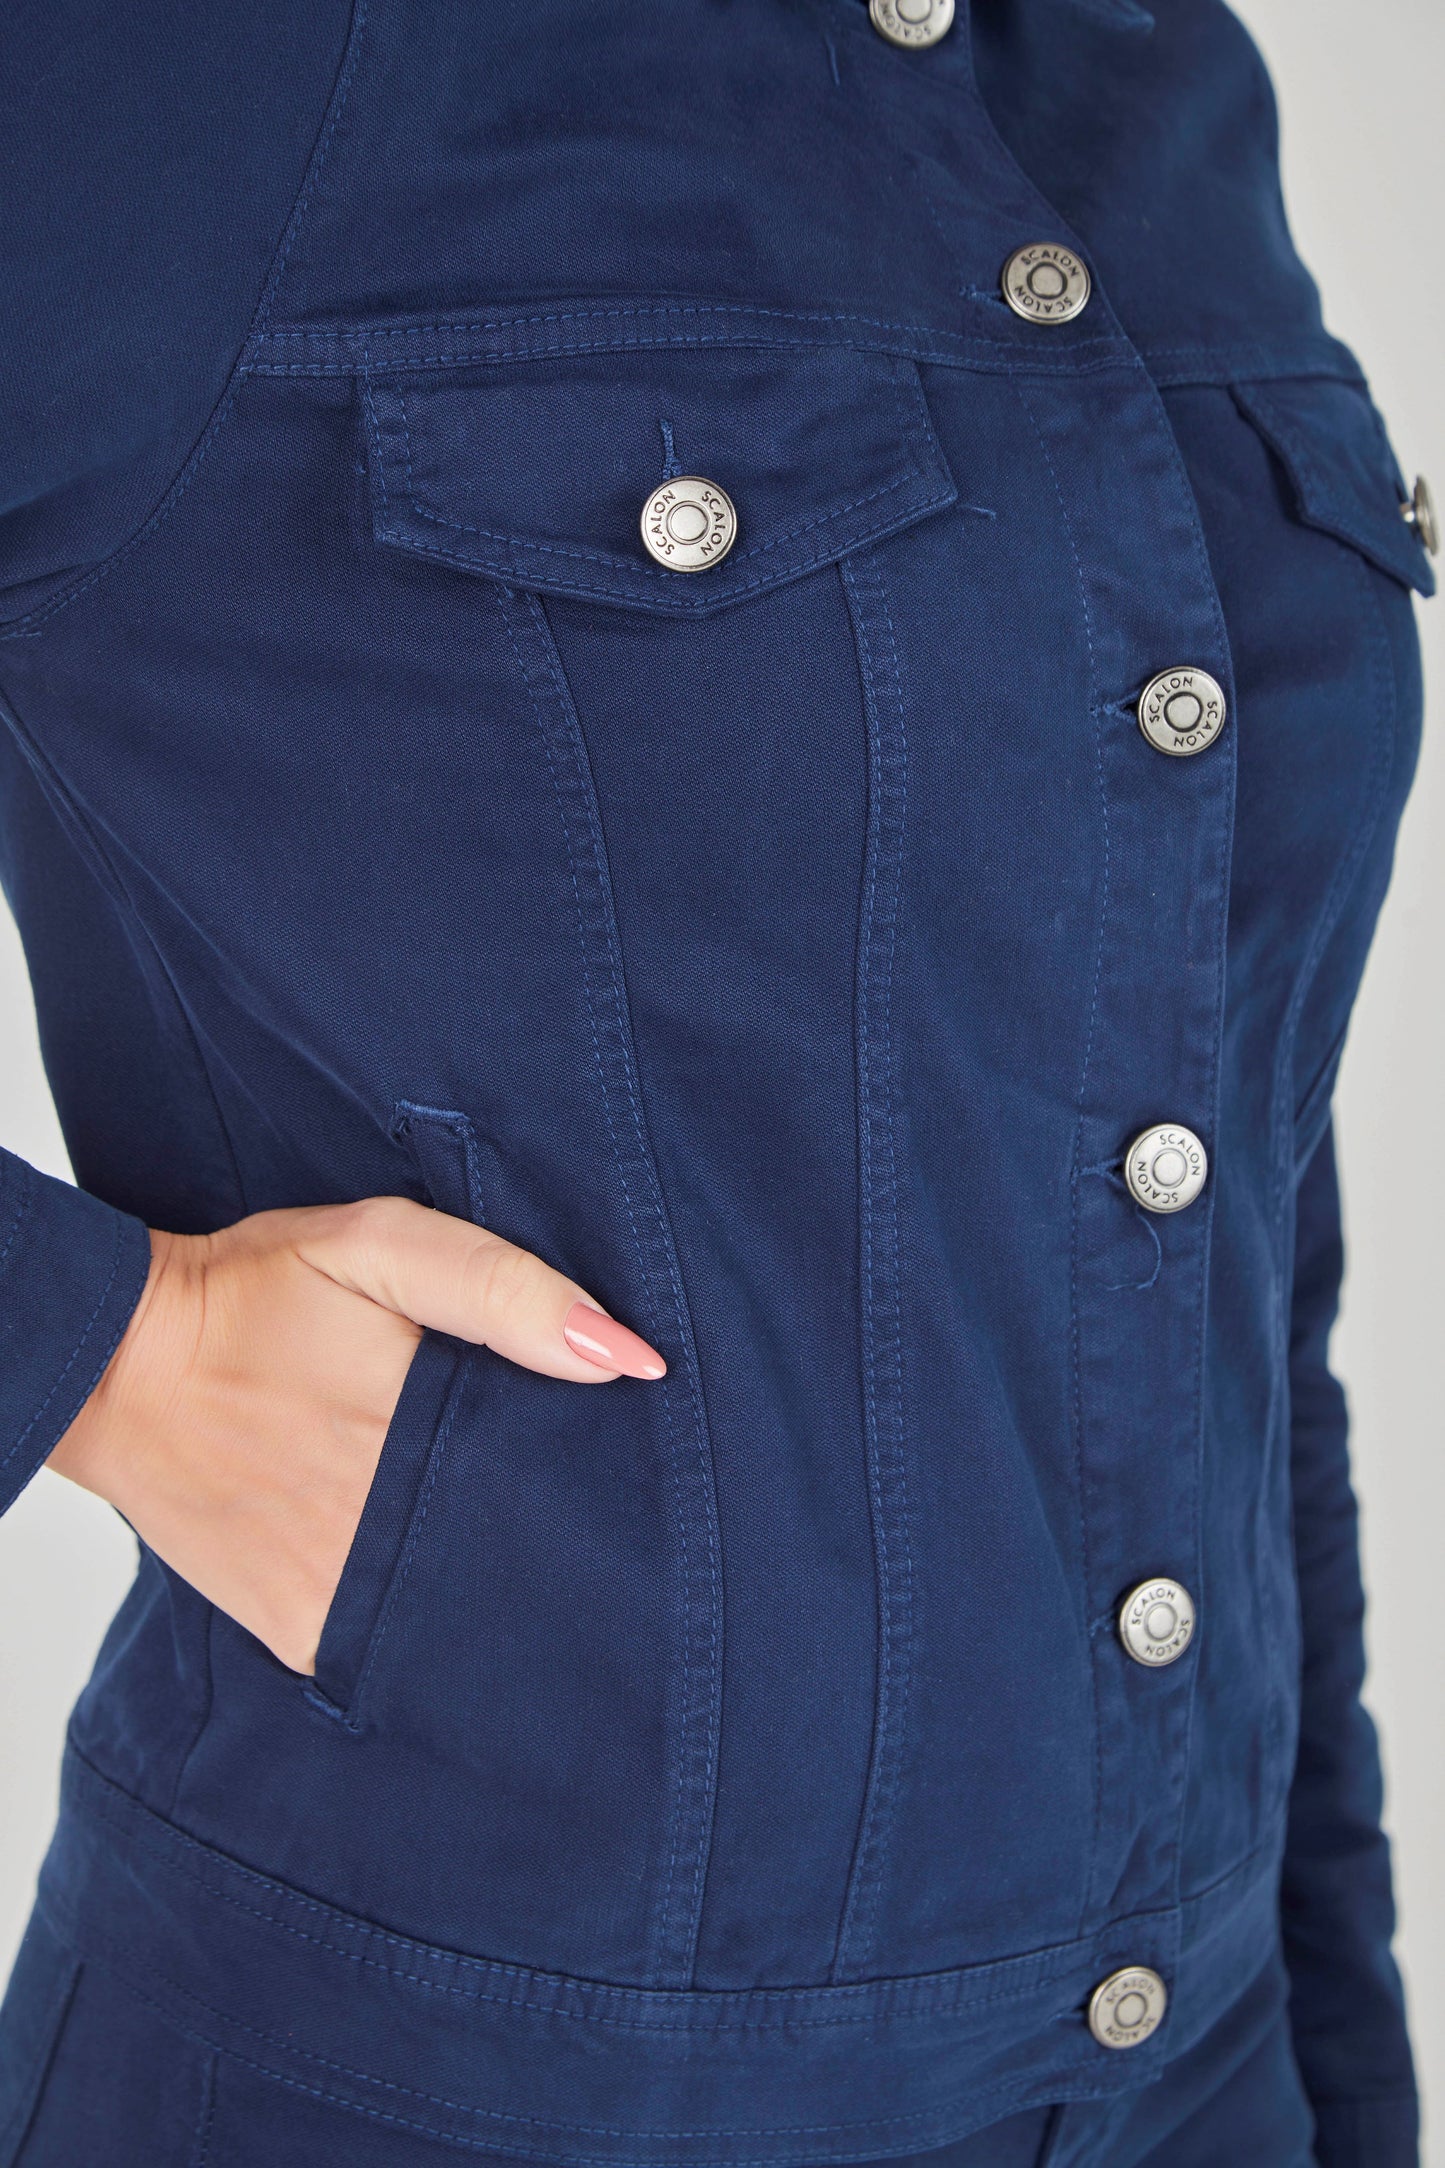 jaqueta malha color tradicional com bolsos